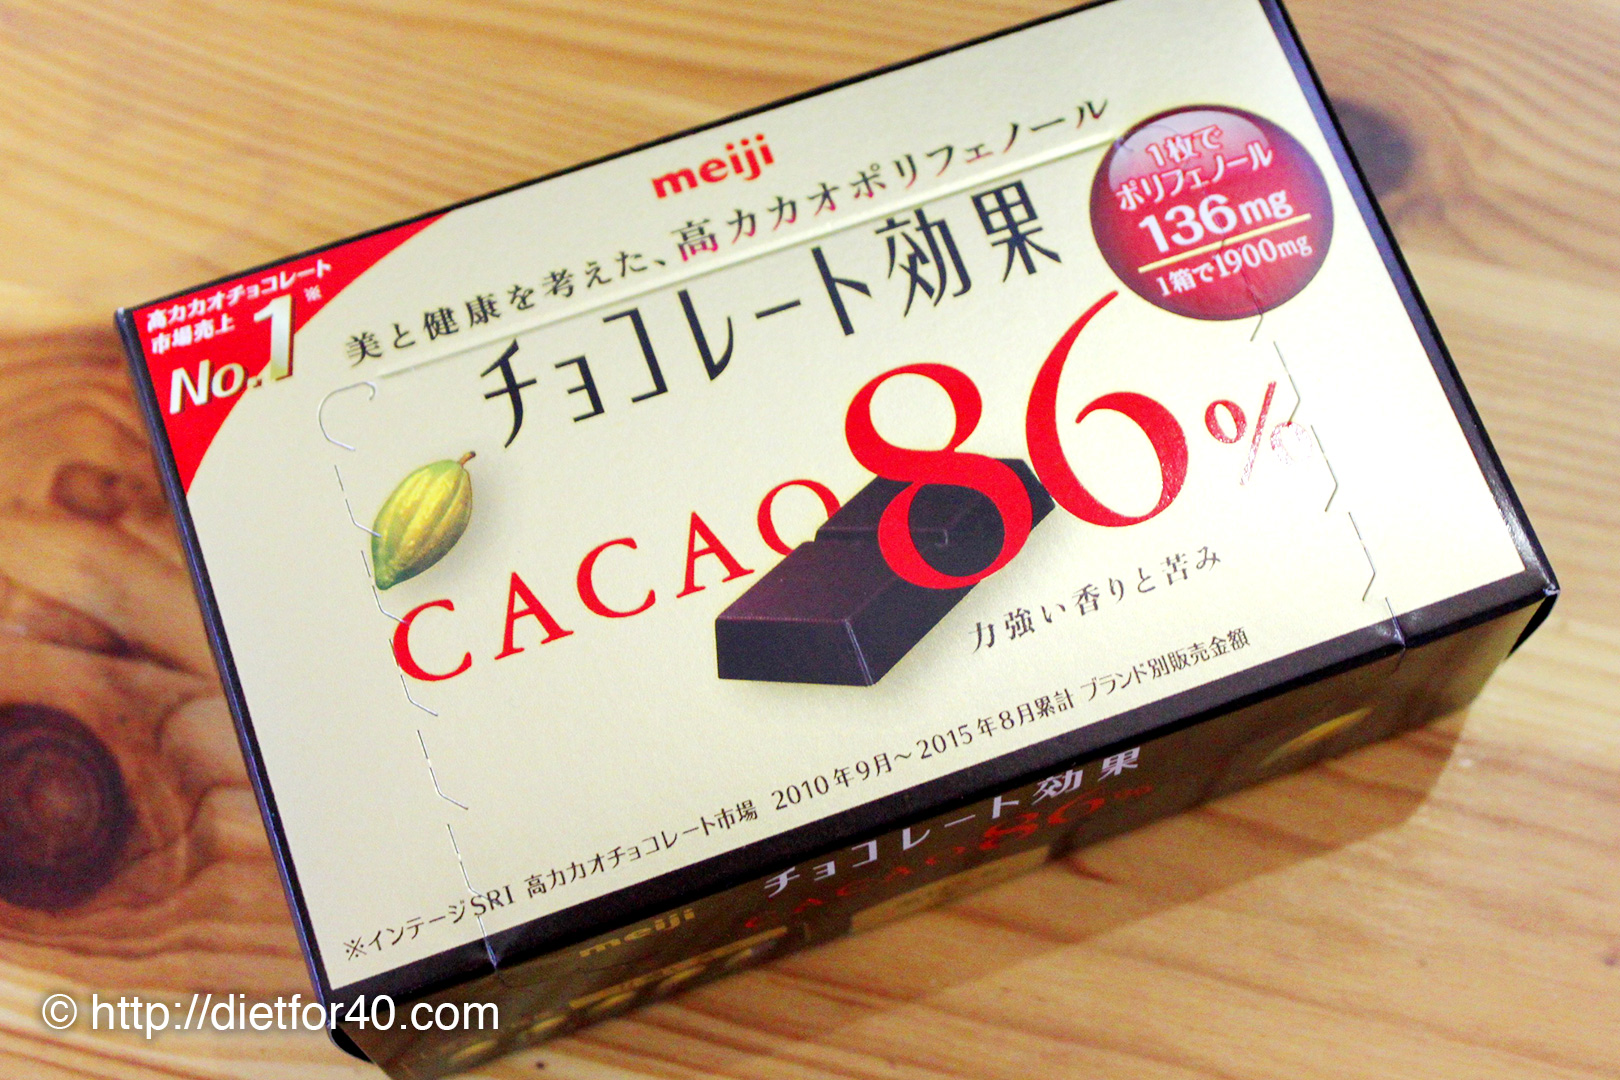 明治の高カカオチョコレート チョコレート効果 カカオ86 Cacao86 は1枚で136mgのカカオポリフェノール ホットチョコレートで美味しくいただいています 目指せ代 アラフォー女性の脱お腹ぽっこりダイエット